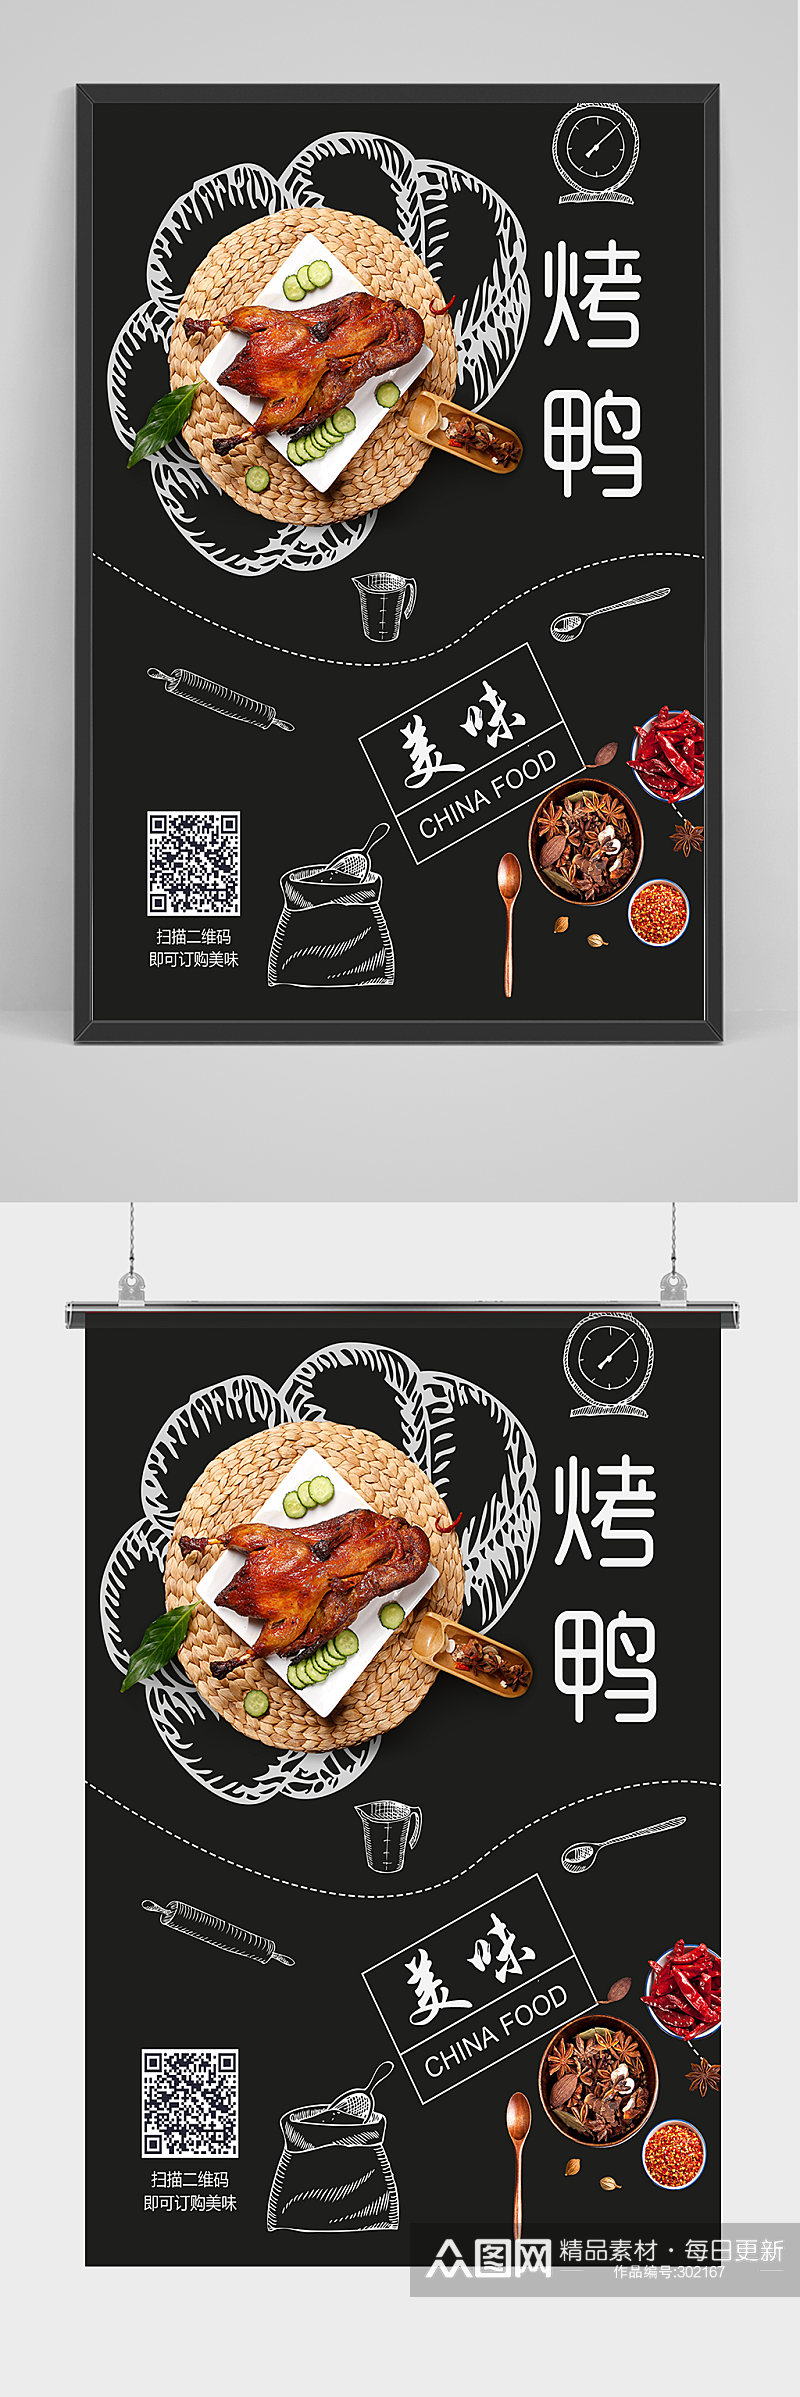 精品创意可爱美味烤鸭海报素材